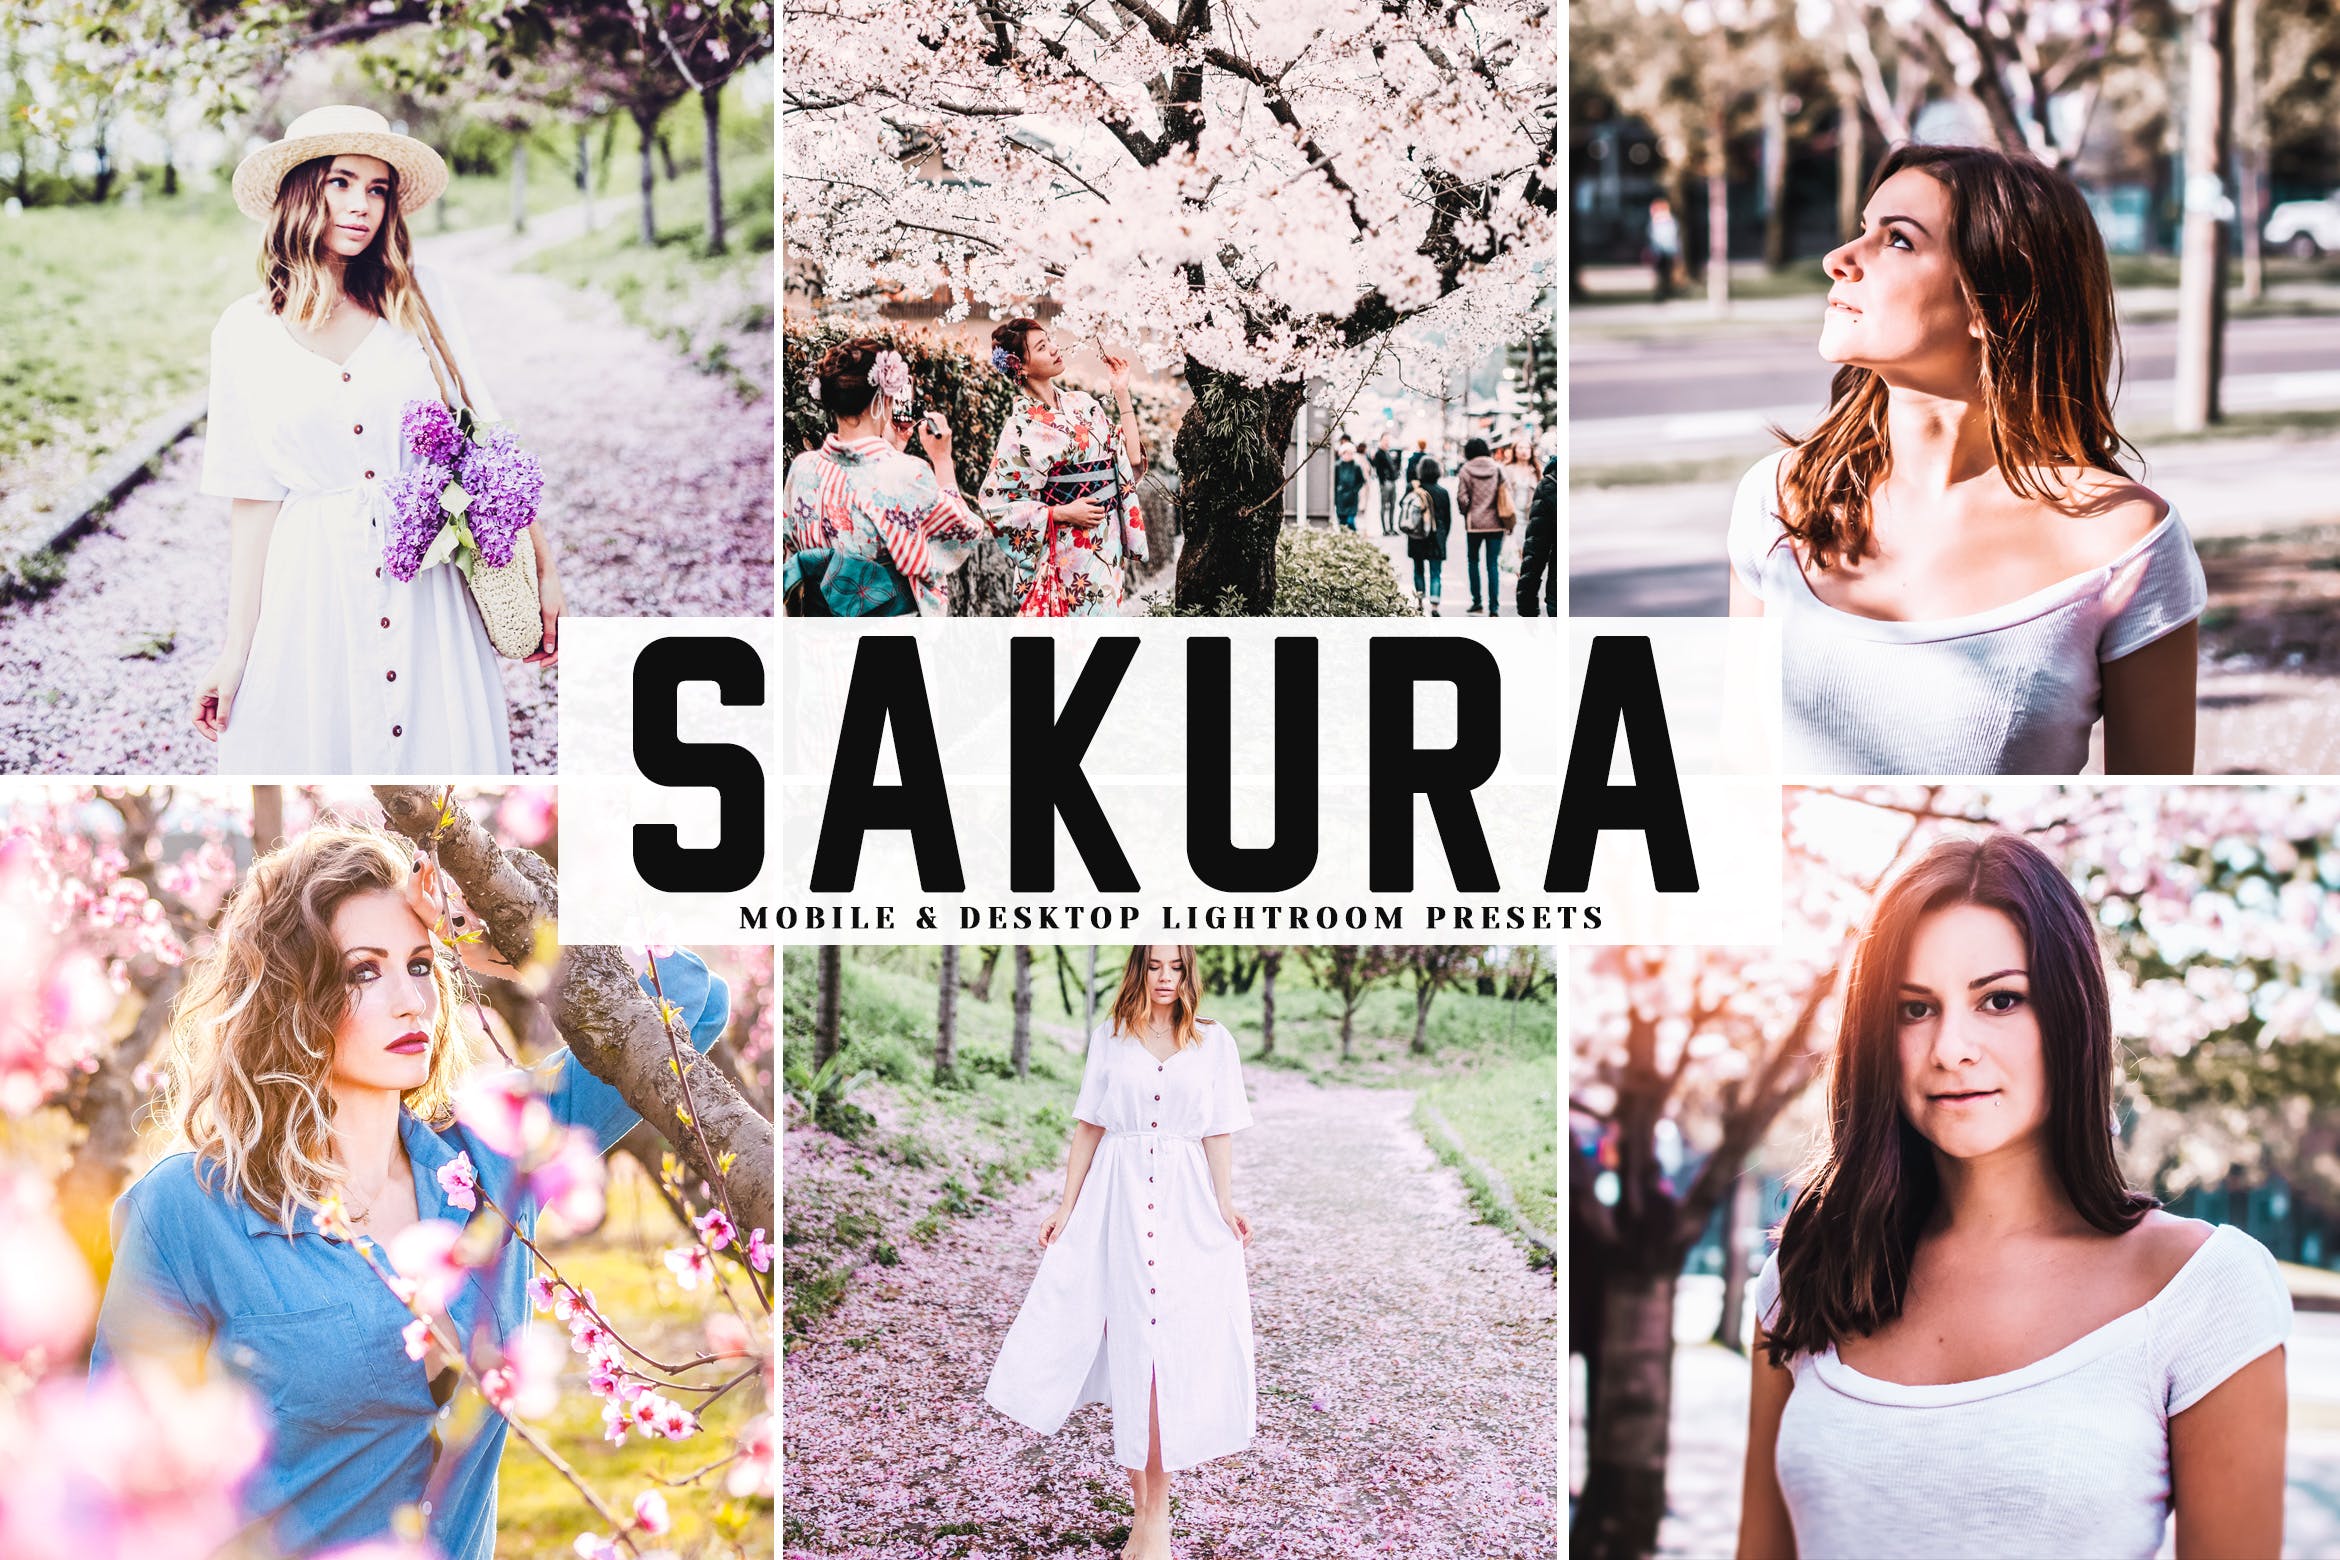 低饱和度柔和色调照片调色滤镜素材库精选LR预设 Sakura Mobile & Desktop Lightroom Presets插图